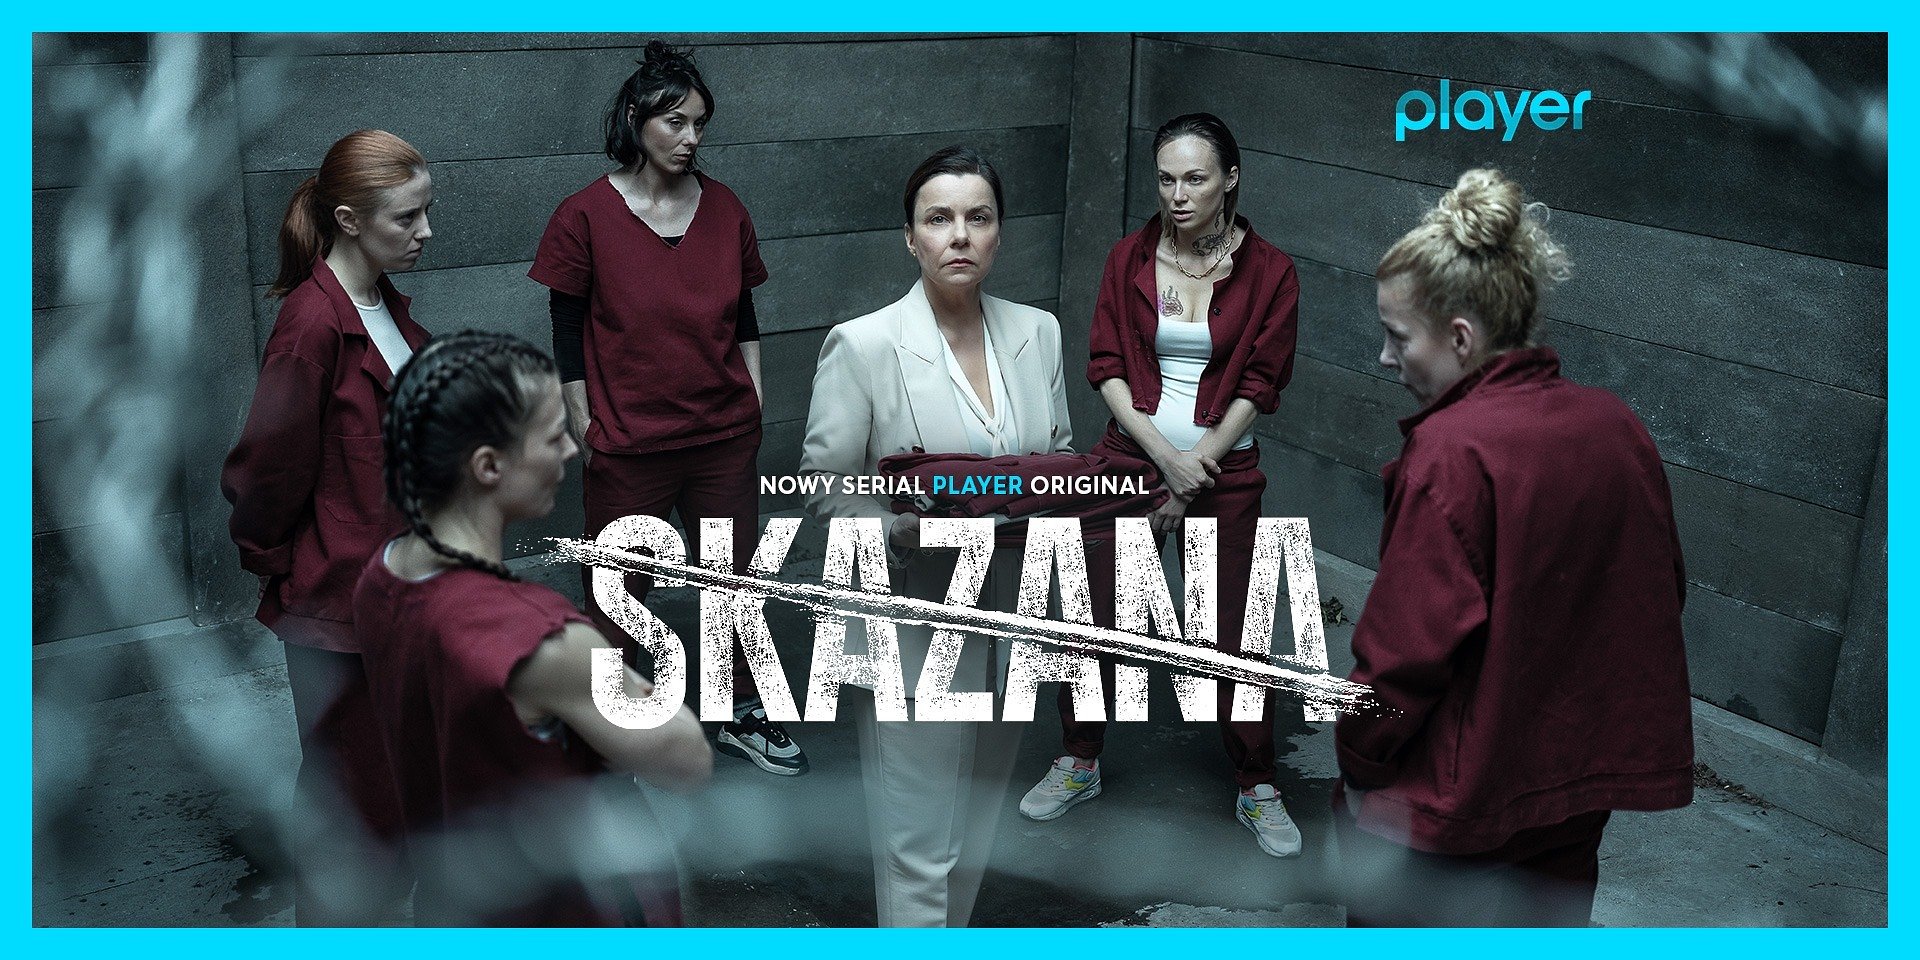 Poznajmy bohaterów nowego serialu "Skazana" - najnowszy hit jest już dostępny w Player!